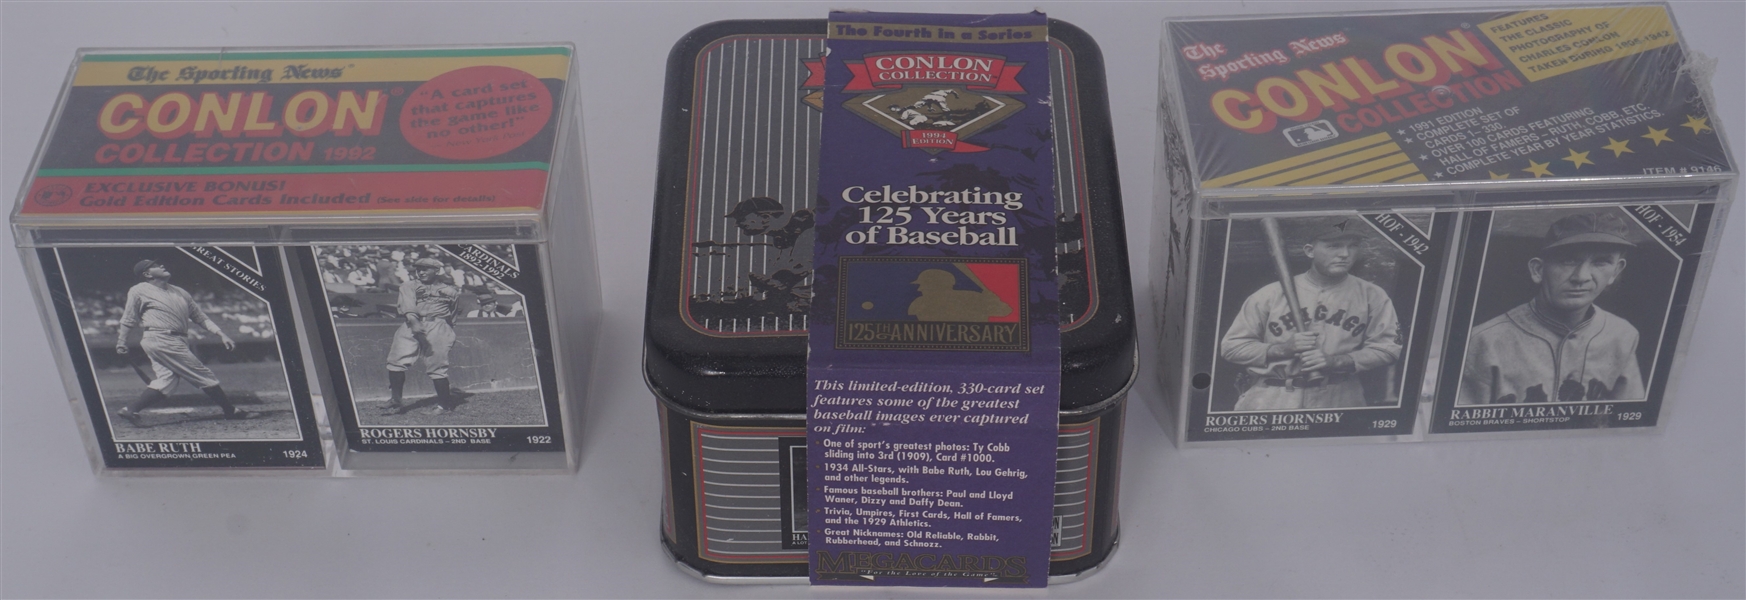 Vintage Conlon Baseball Card Collection w/ 3 Sets